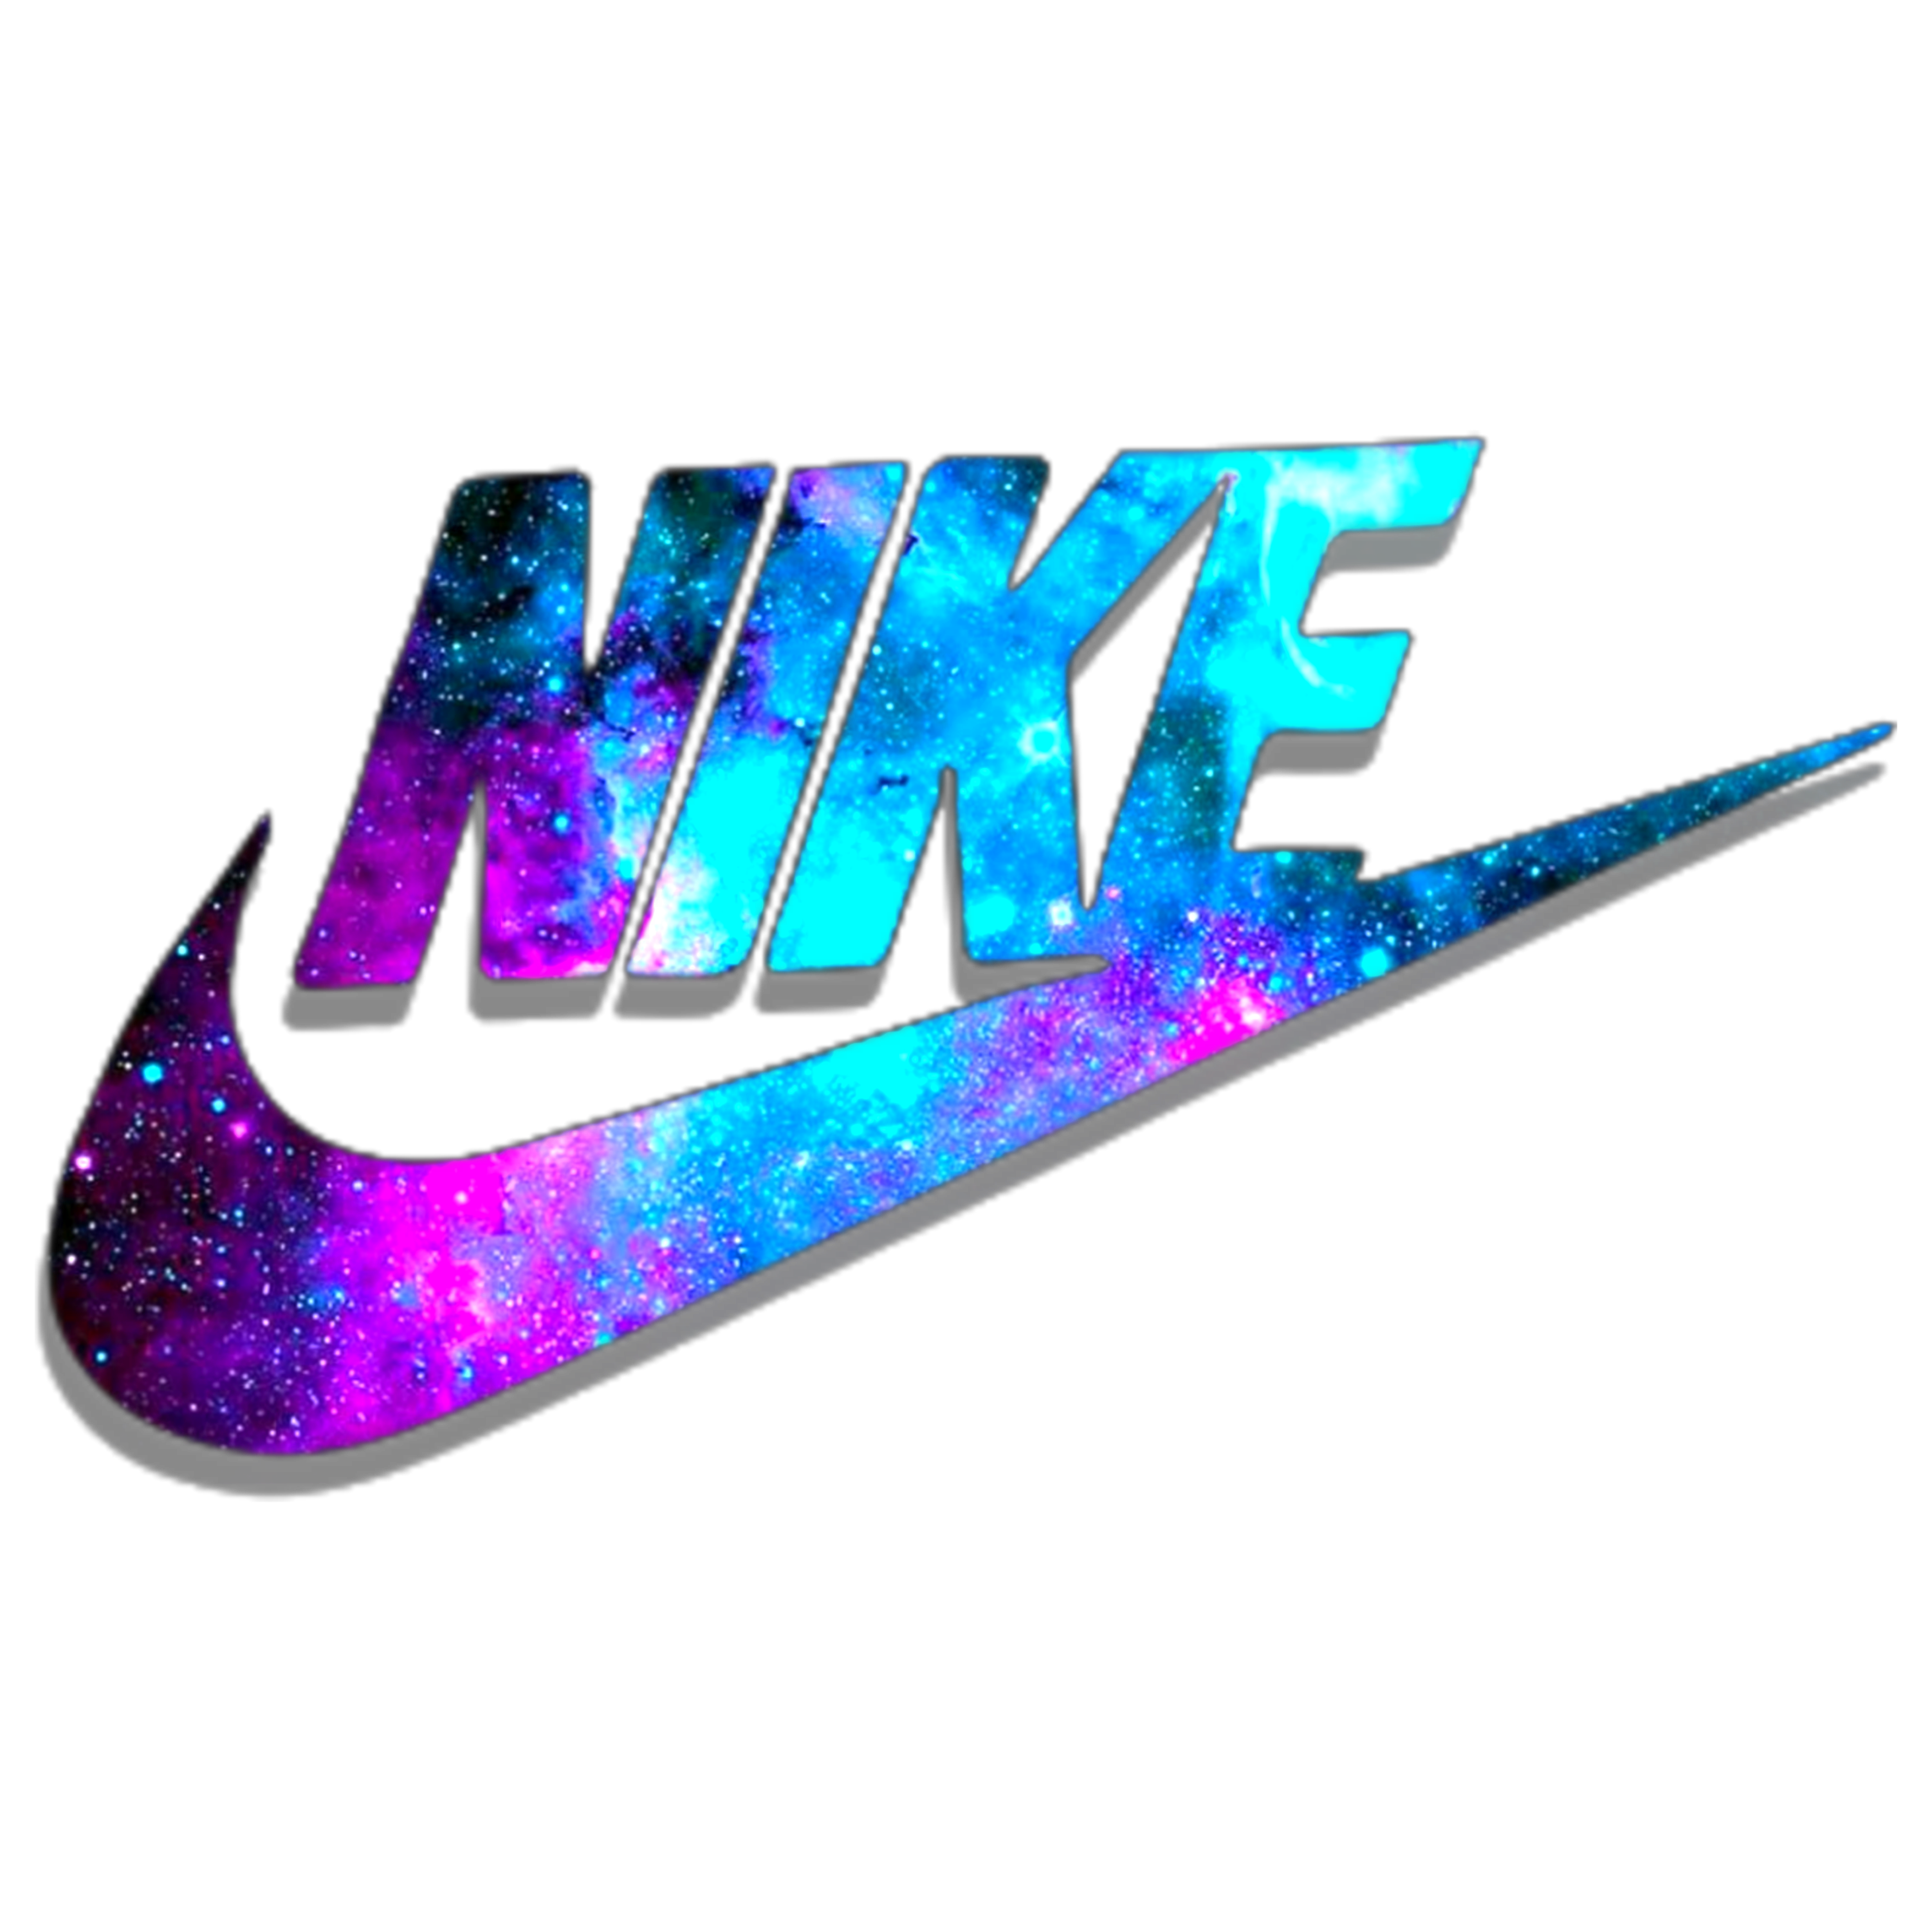 Nike Logo - Logos Pictures